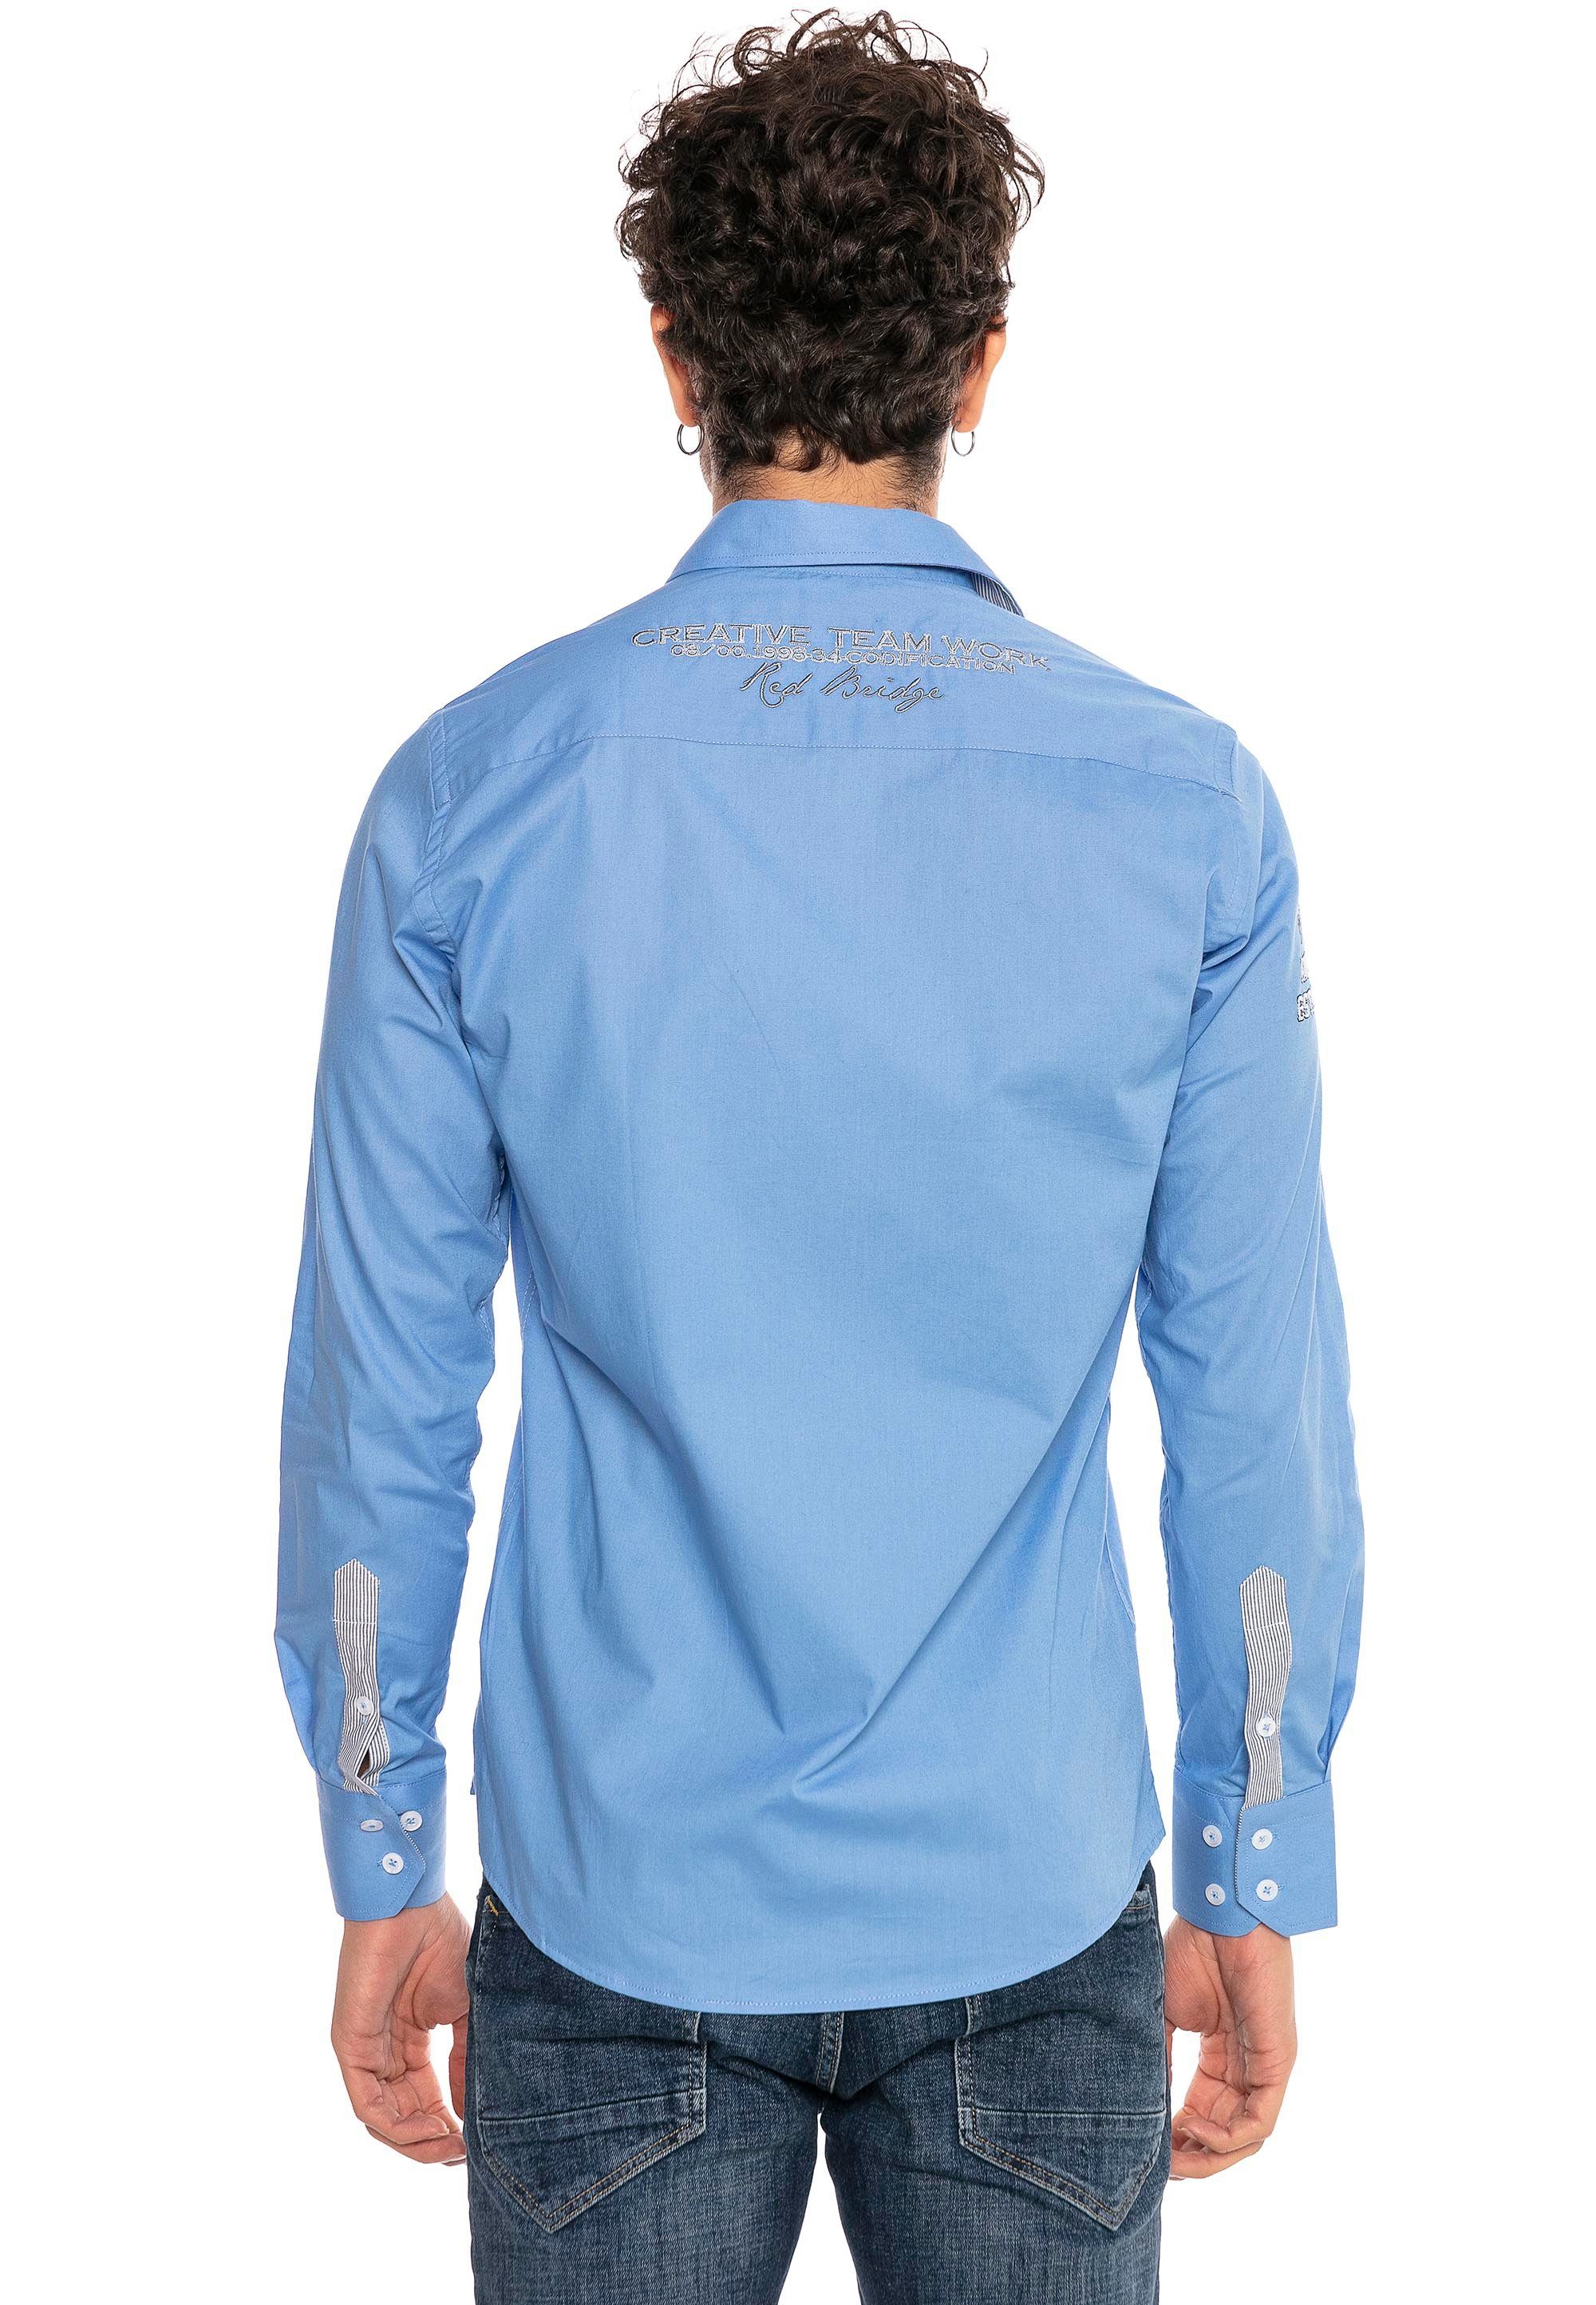 Jersey City RedBridge Slim Fit-Schnitt blau-blau Stickerei im Langarmhemd mit